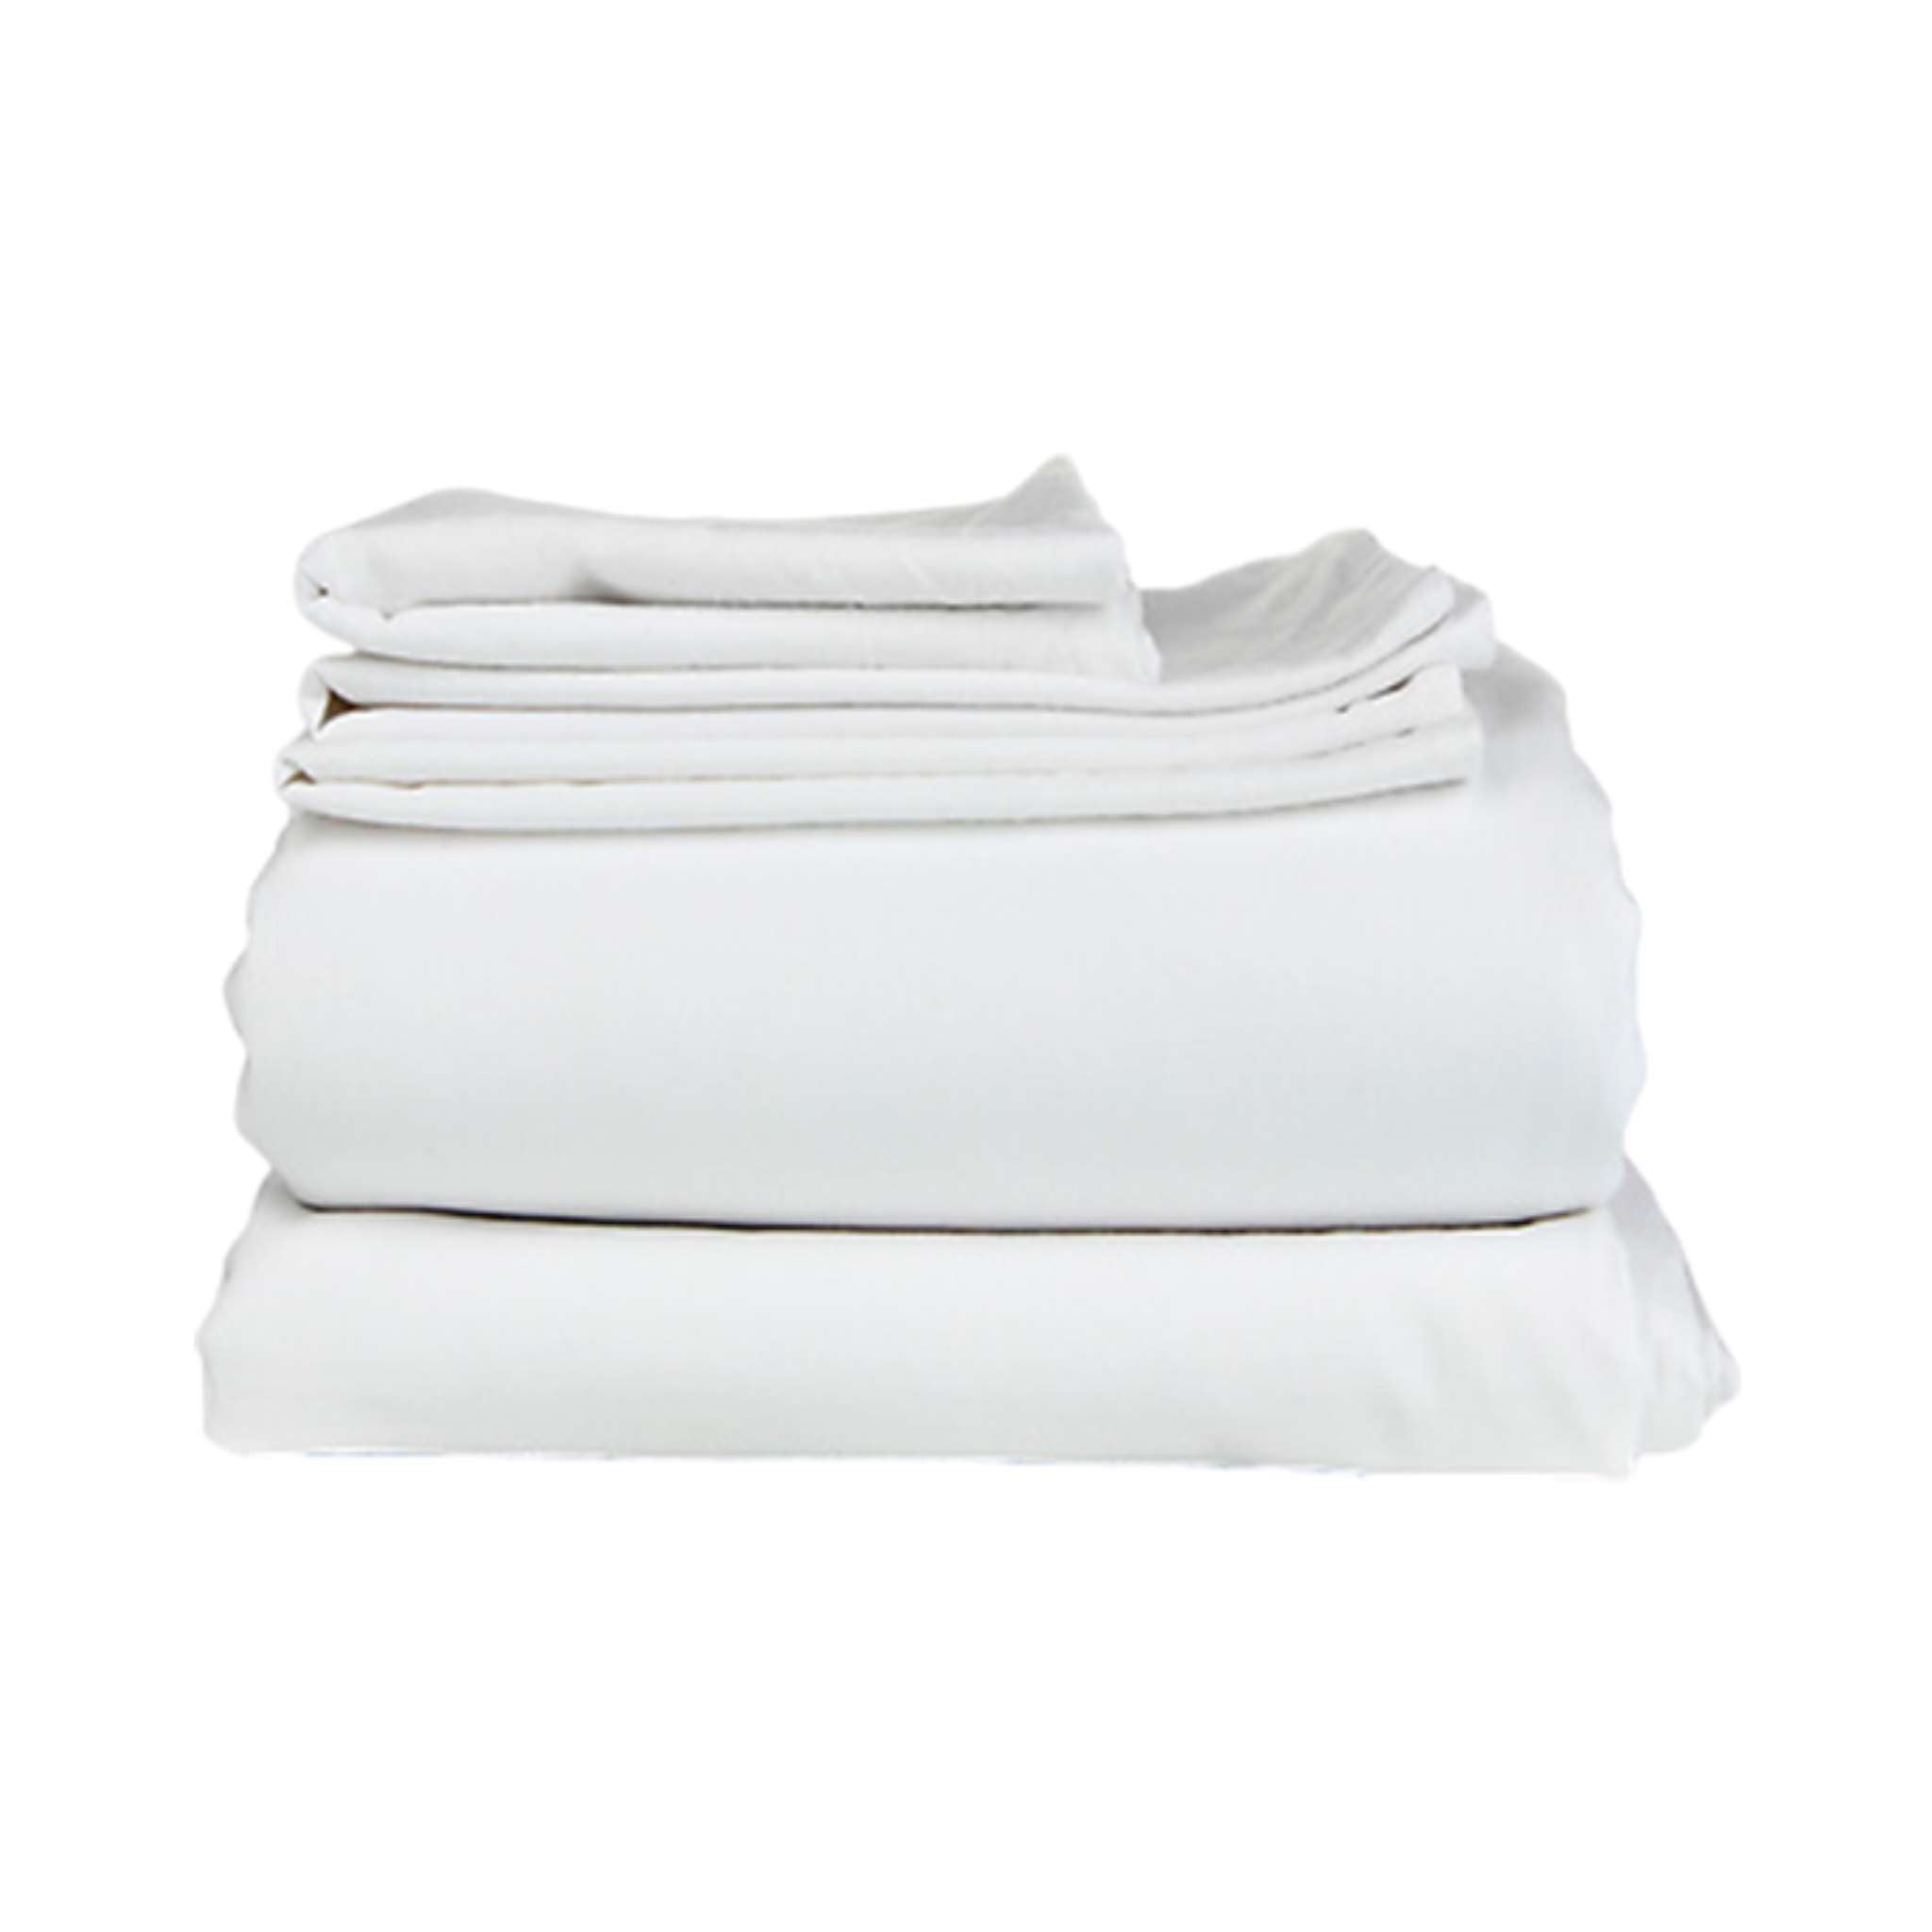 ICARE Adjustable Cotton Sheet Sets